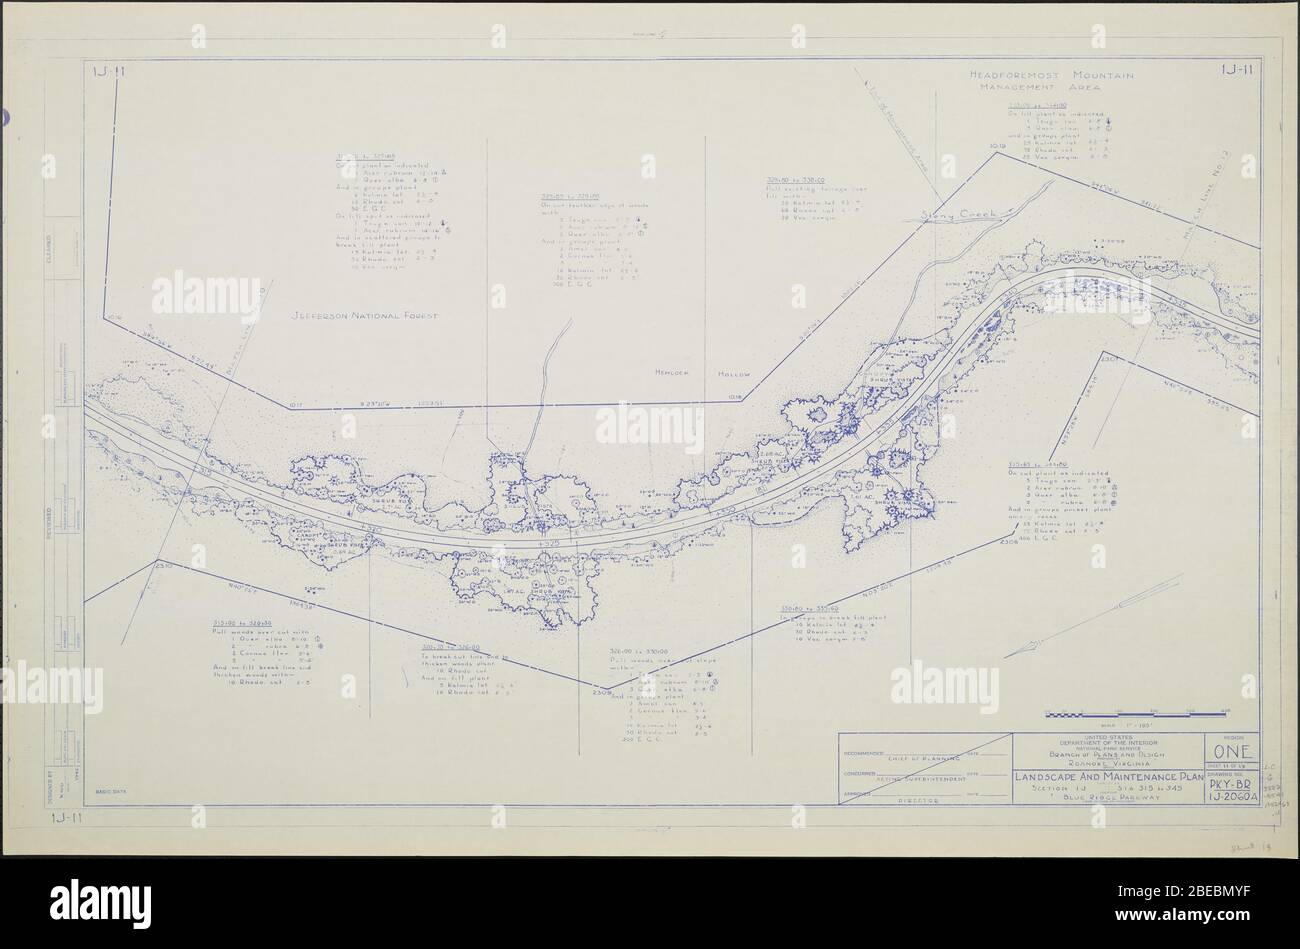 'Blue Ridge Parkway, Region 1 Blatt 11; EINE Karte des Blue Ridge Parkway mit Details über die nahe gelegenen Bäume, Sträucher und Sämlinge. Beinhaltet Stony Creek, Hemlock Hollow, das Headforest Mountain Management Area und Jefferson National Forest. Zeichnung Nr. 1J-11. Skala 1=100'.; 1942date QS:P571,+1942-00-00T00:00:00Z/9; ' Stockfoto